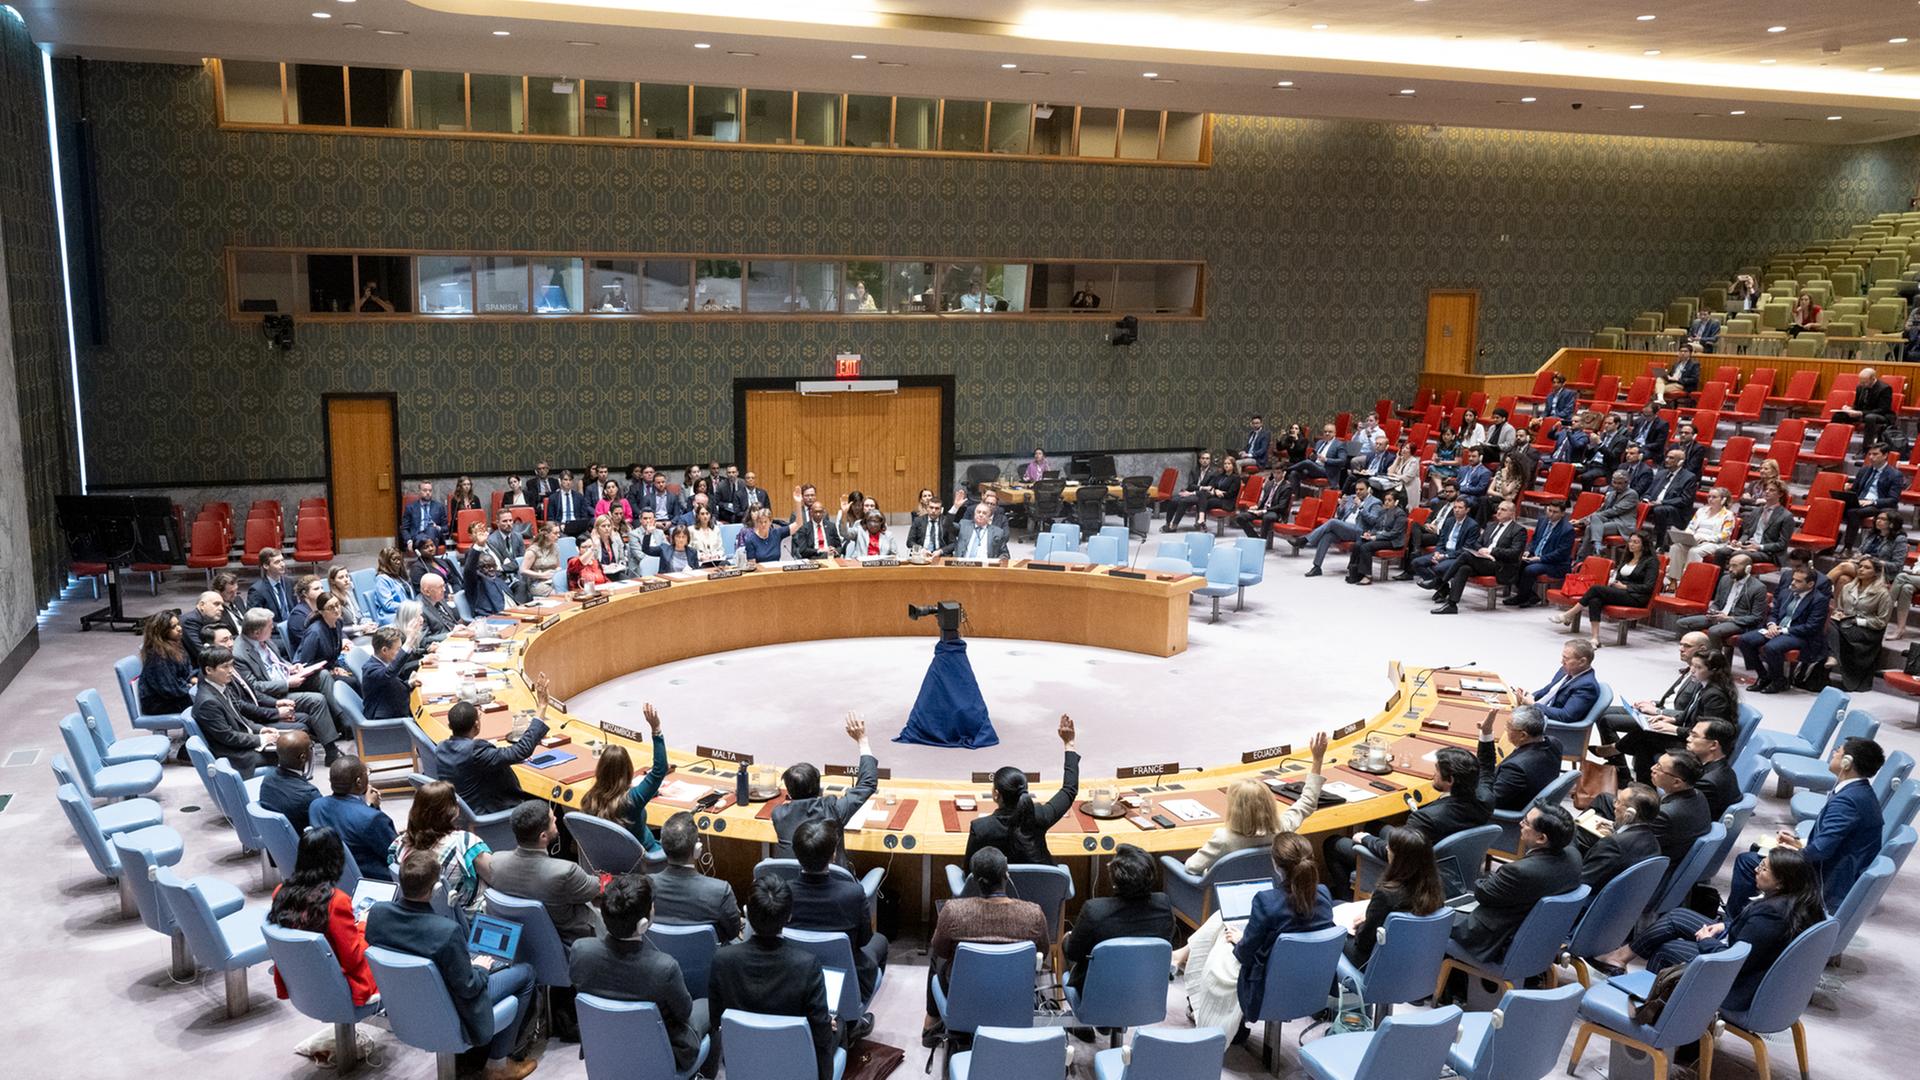 Während einer Sitzung des UN-Sicherheitsrates im UN-Hauptquartier in New York stimmen die Vertreter über einen Resolutionsentwurf ab.